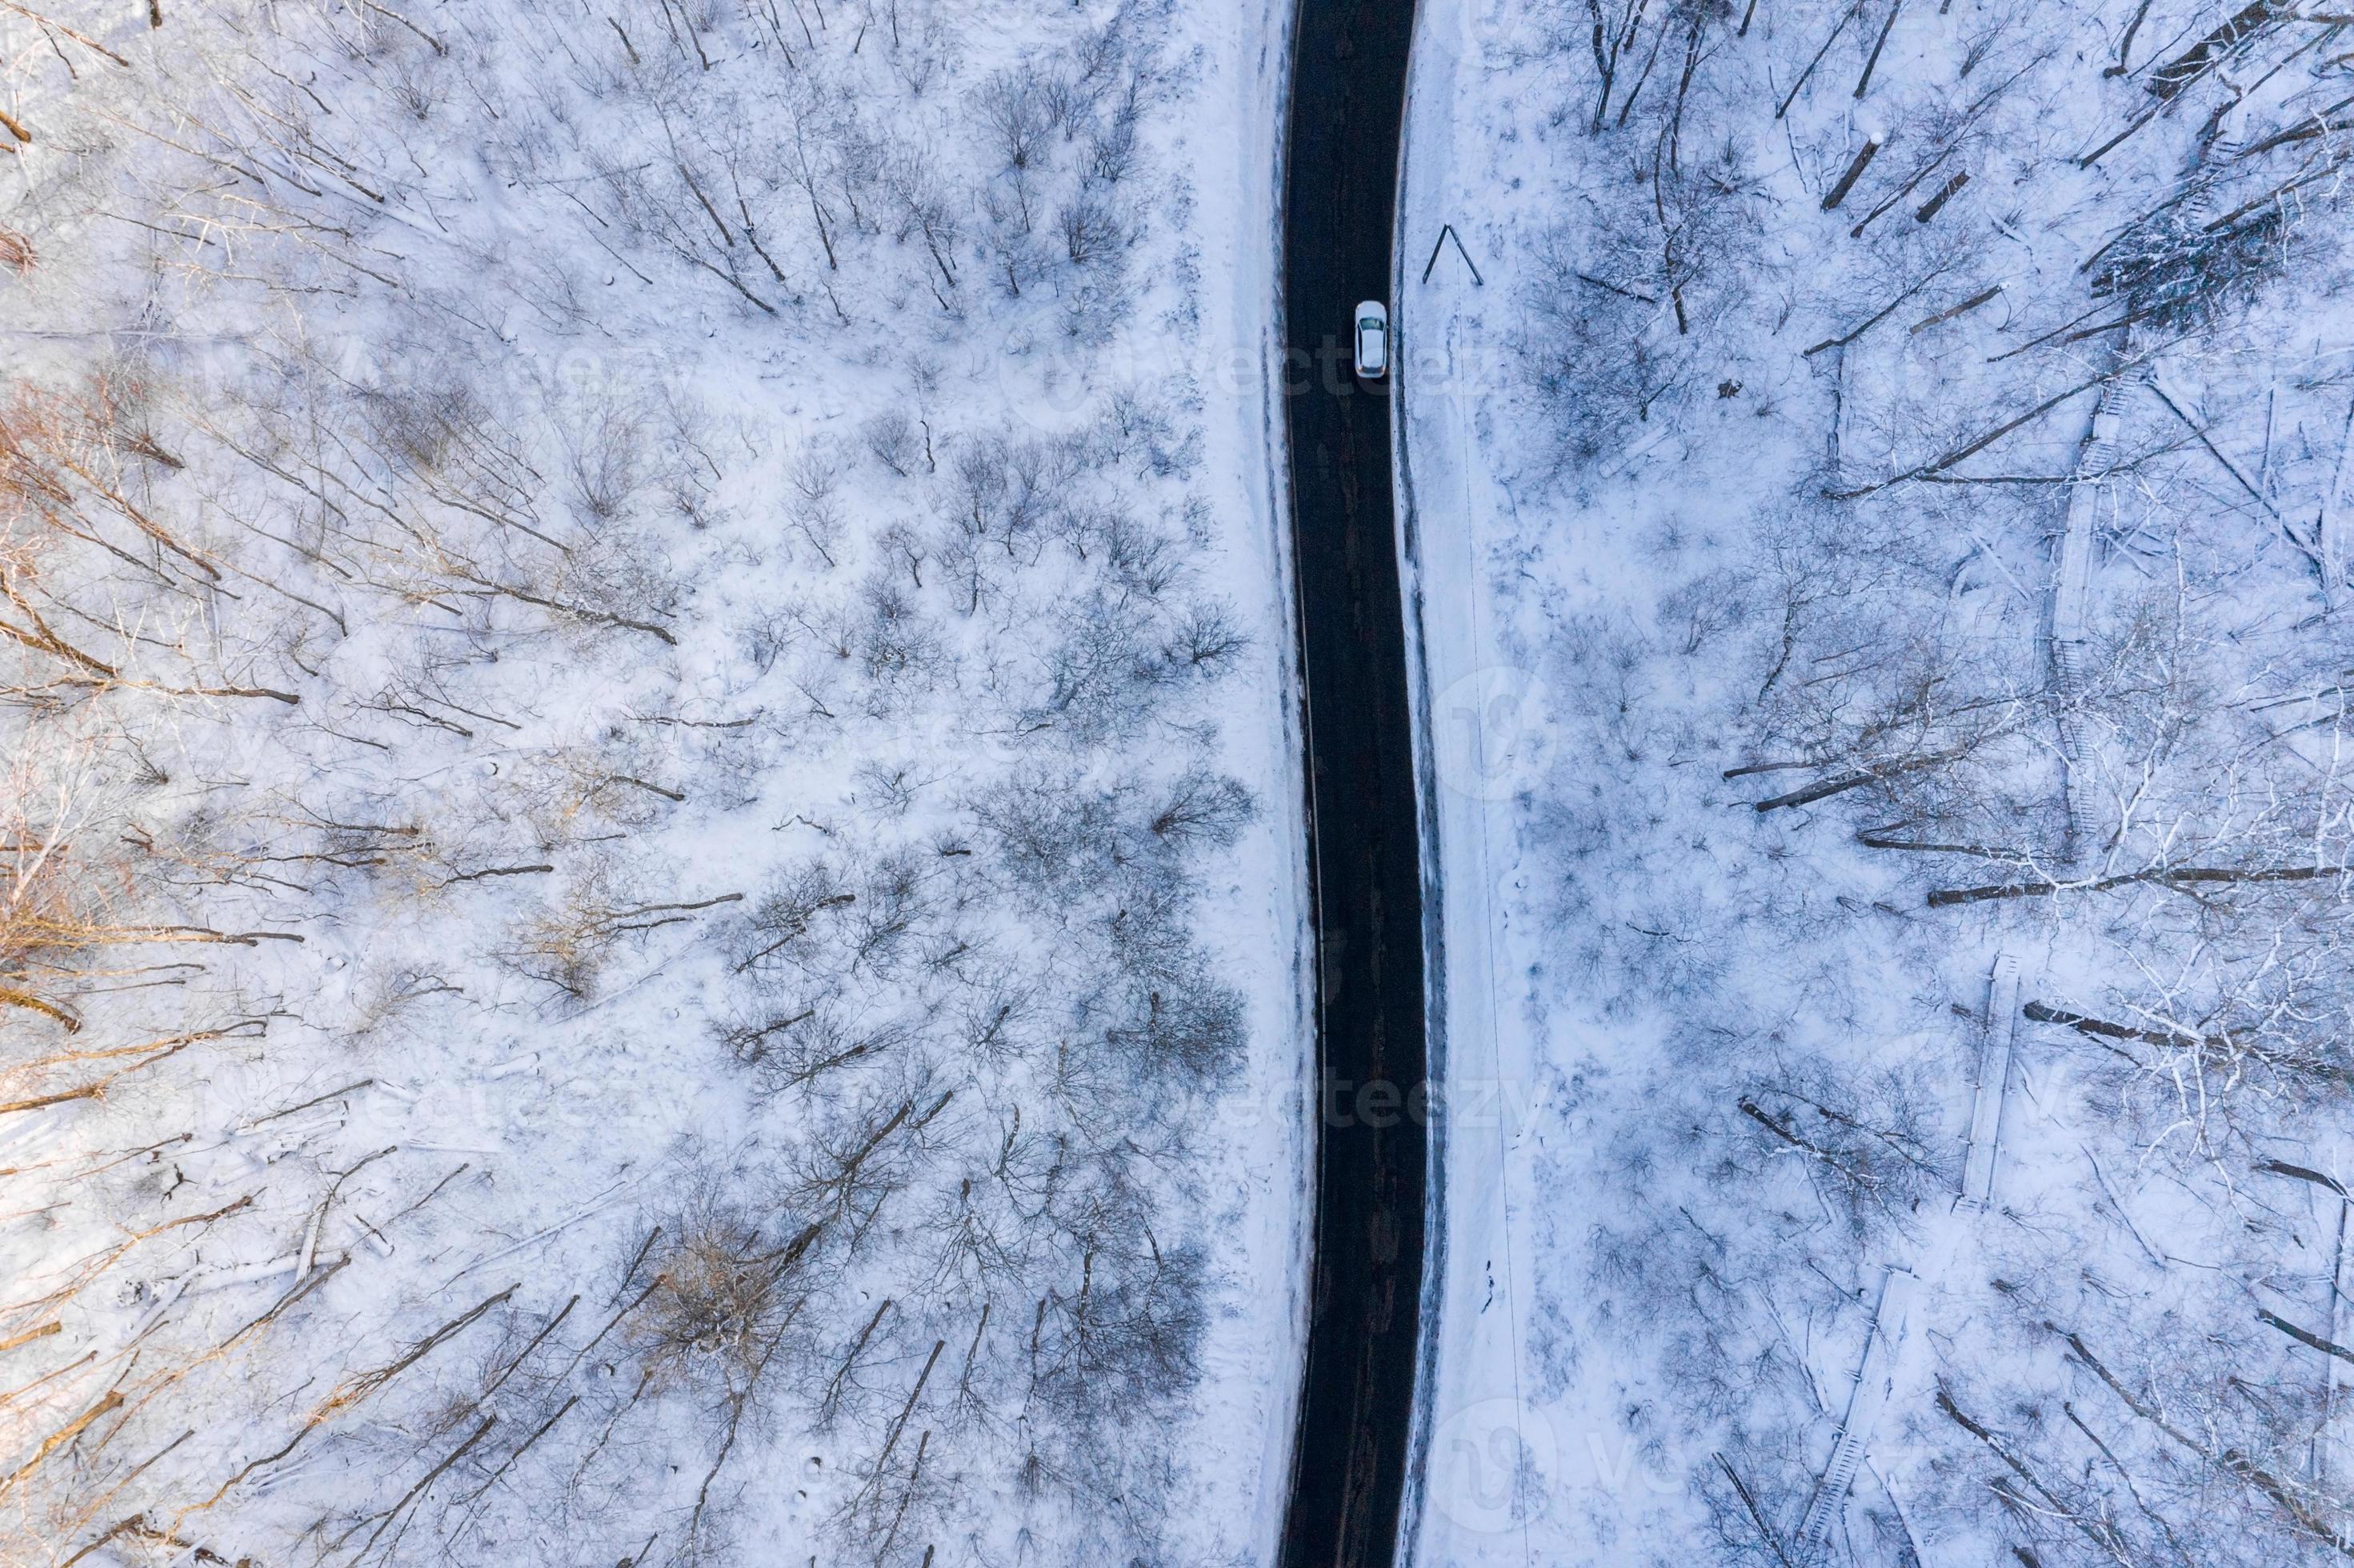 kurvige, windige Straße im schneebedeckten Wald, Luftbild von oben nach  unten. 5133543 Stock-Photo bei Vecteezy